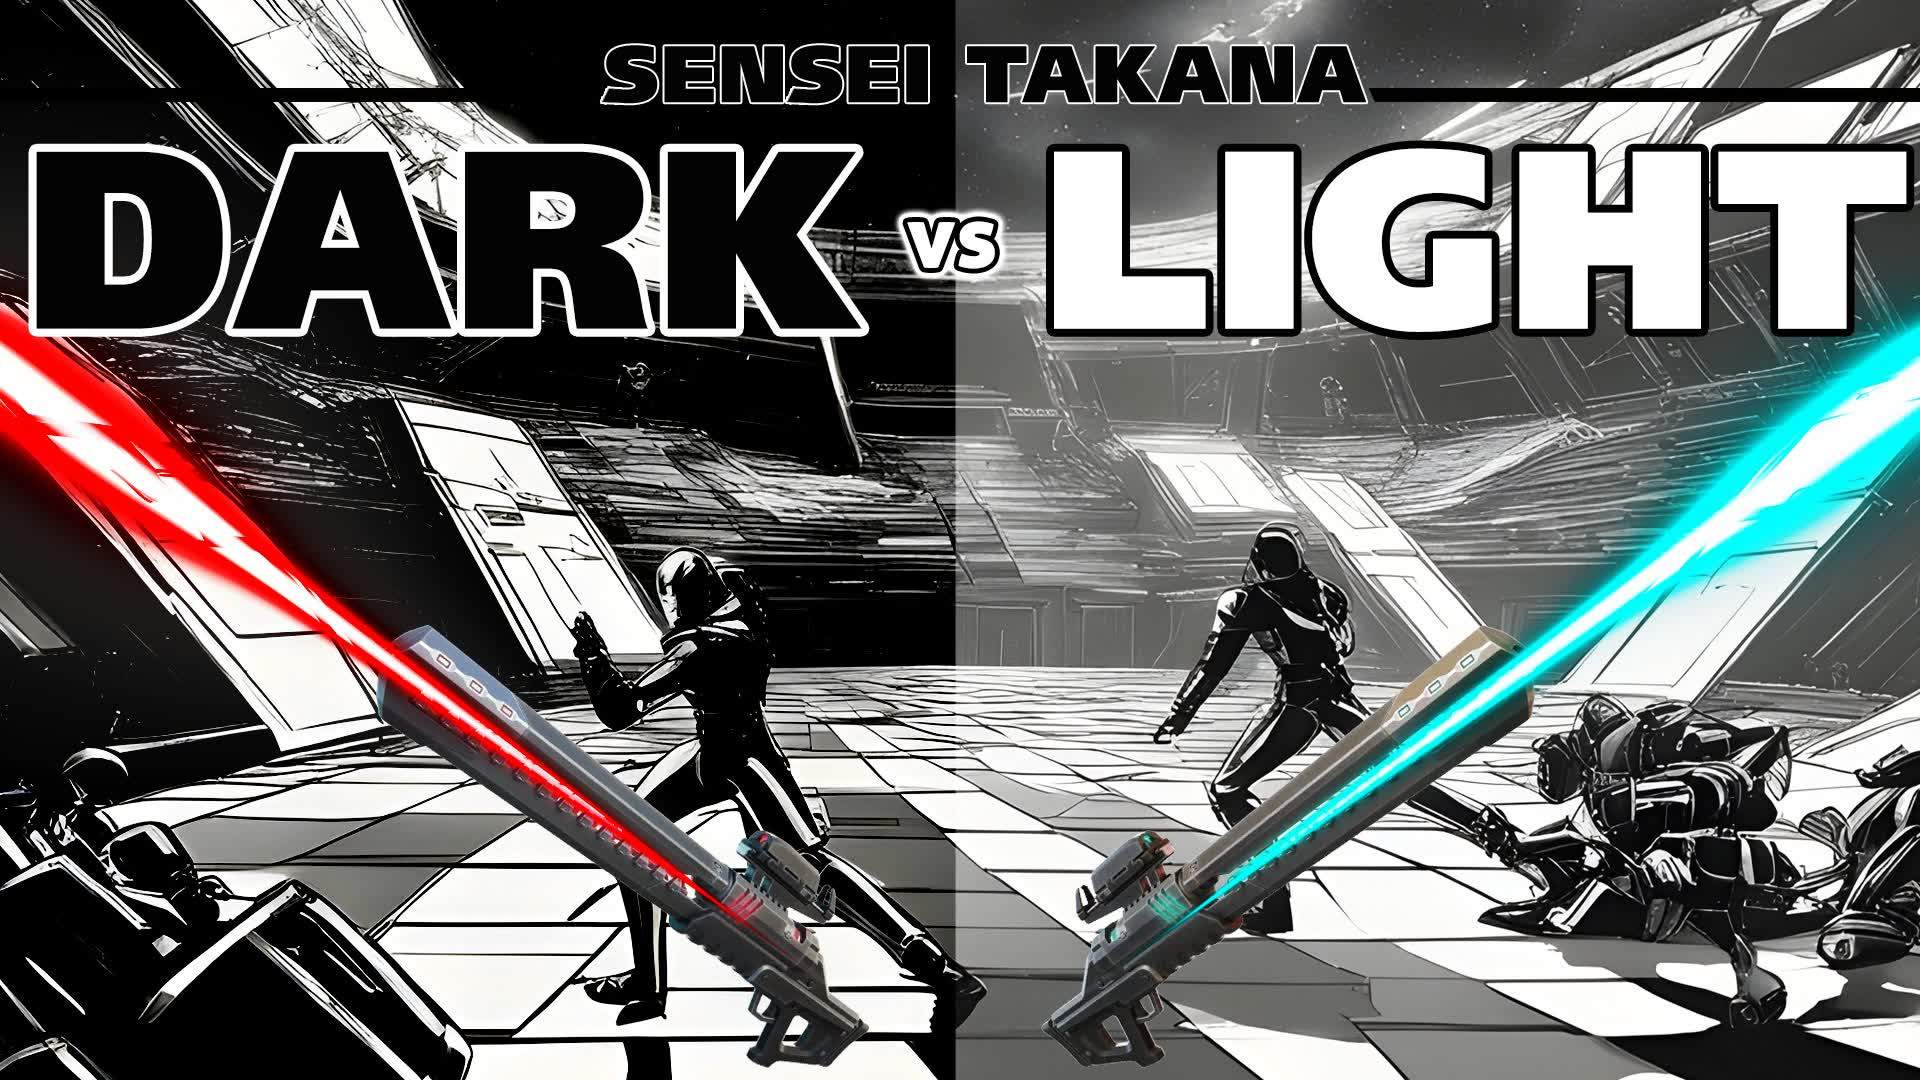 DARK vs LIGHT by SENSEI TAKANA